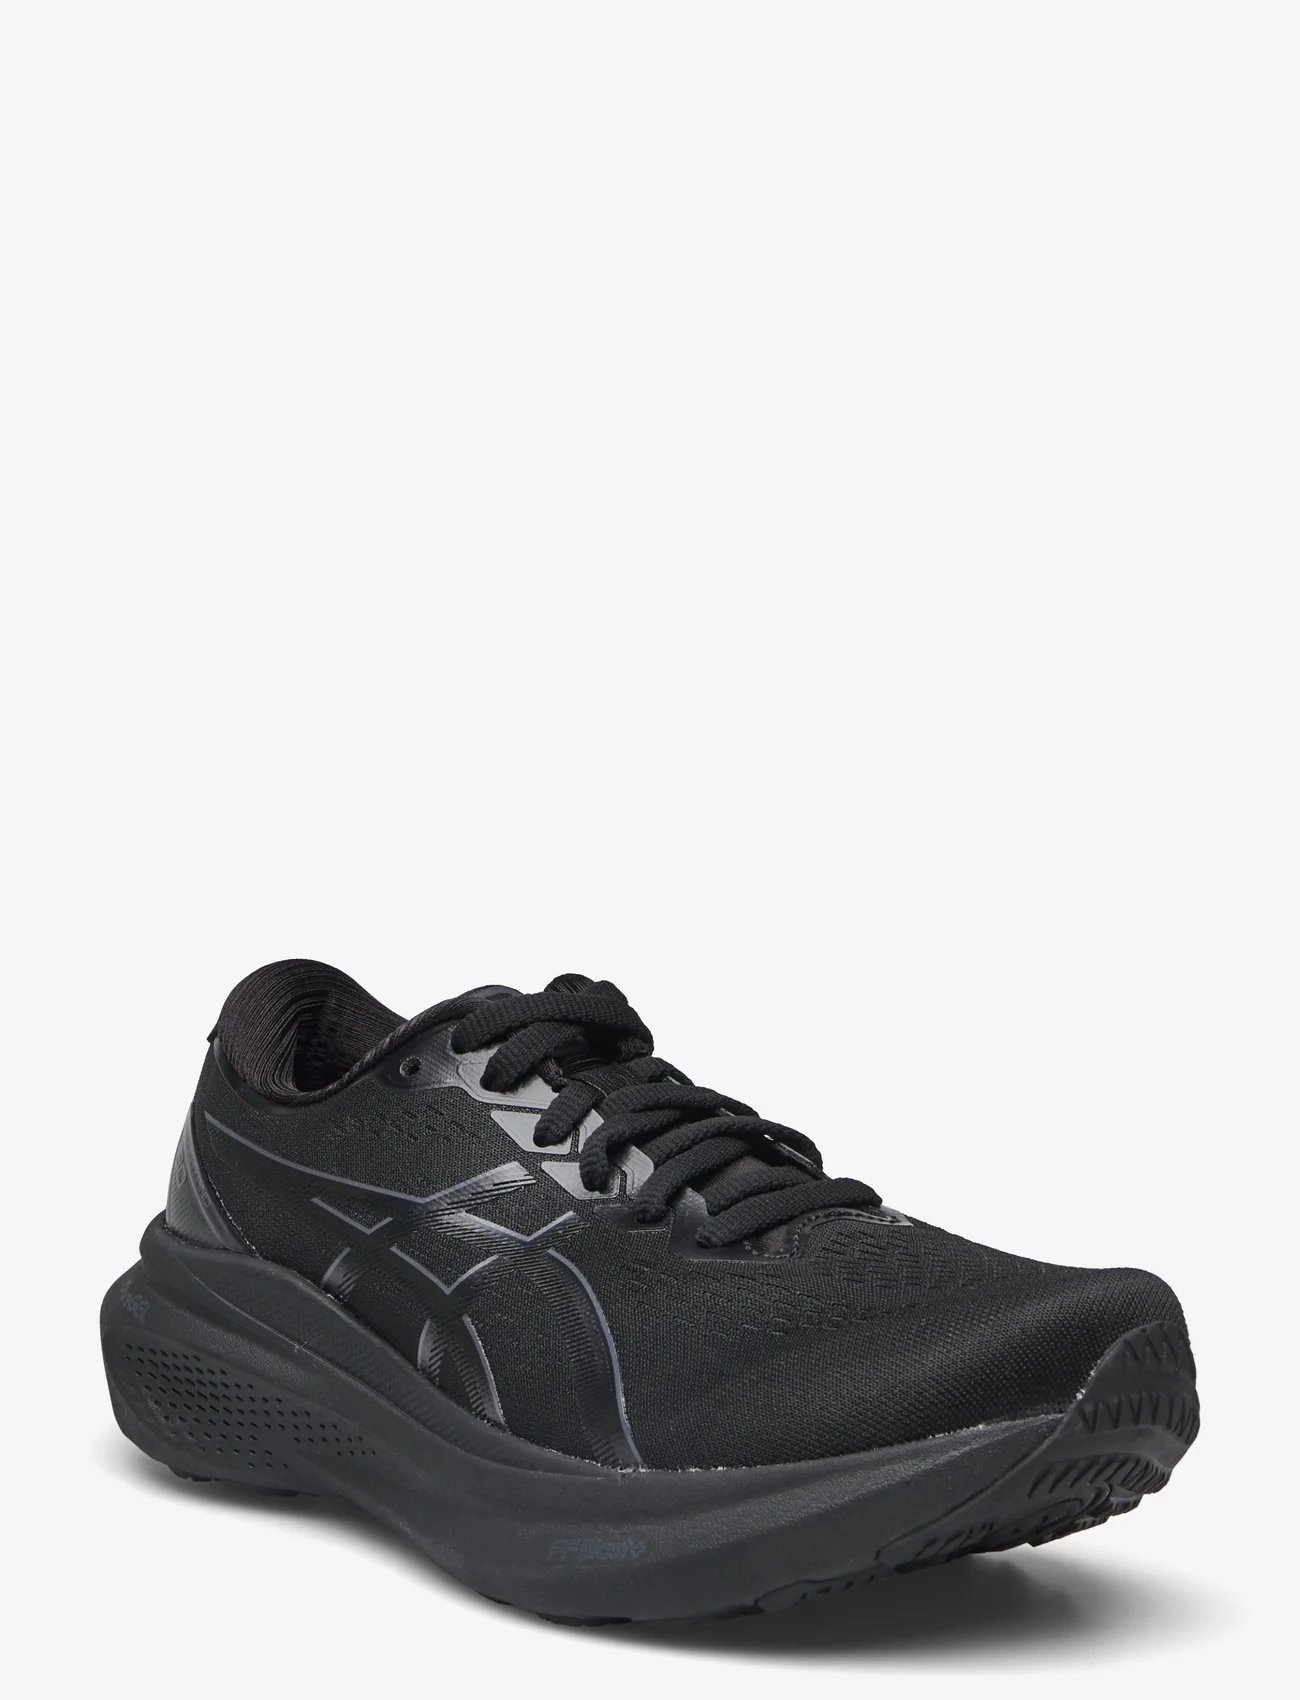 Asics - GEL-KAYANO 30 - shoes - black/black - 0